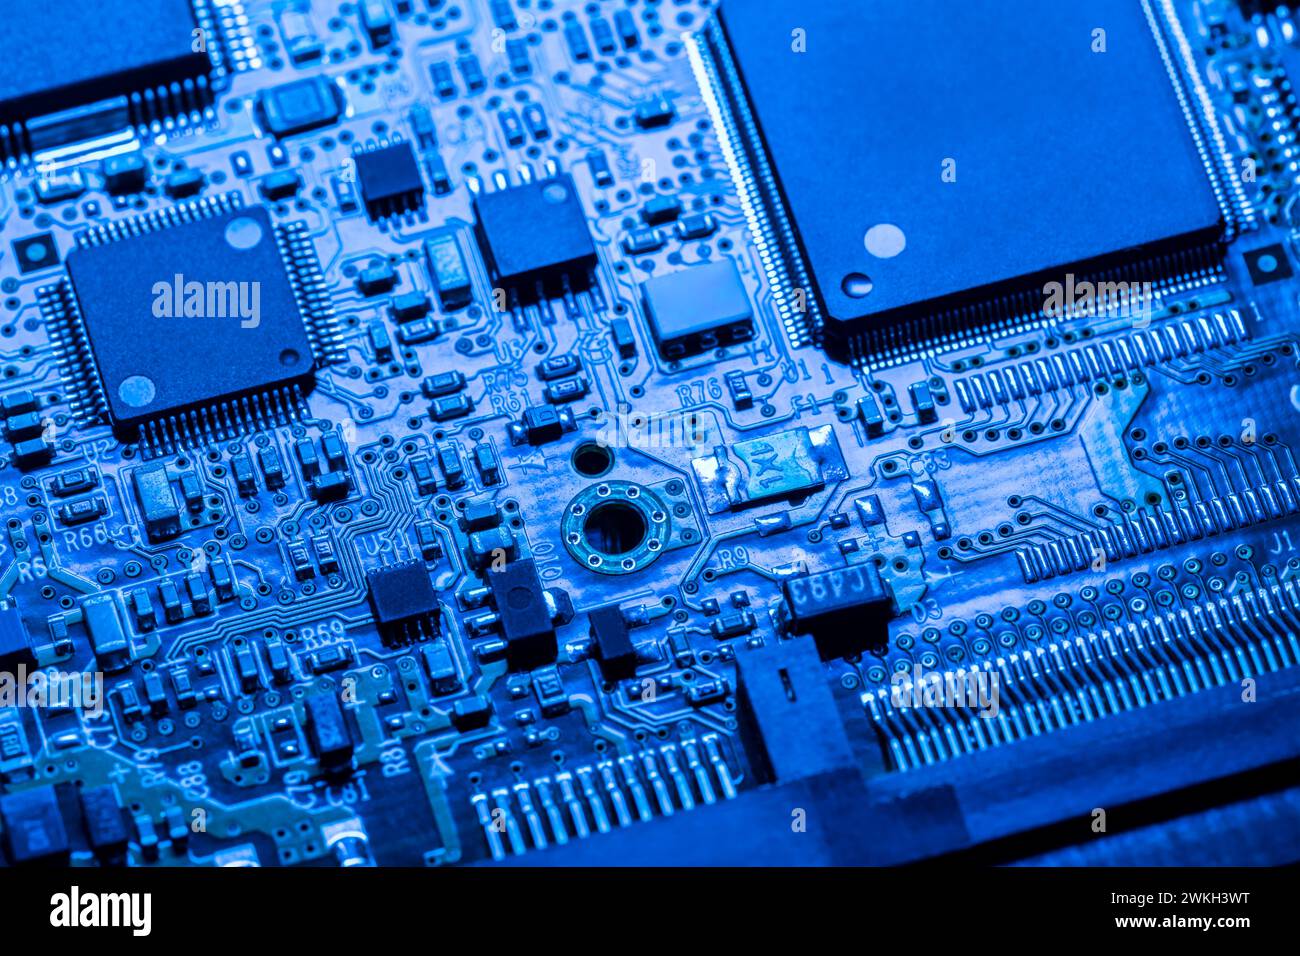 Computerplatine mit Chips und verschiedenen elektronischen Bauteilen. Blau gefärbt. Nahansicht. Stockfoto